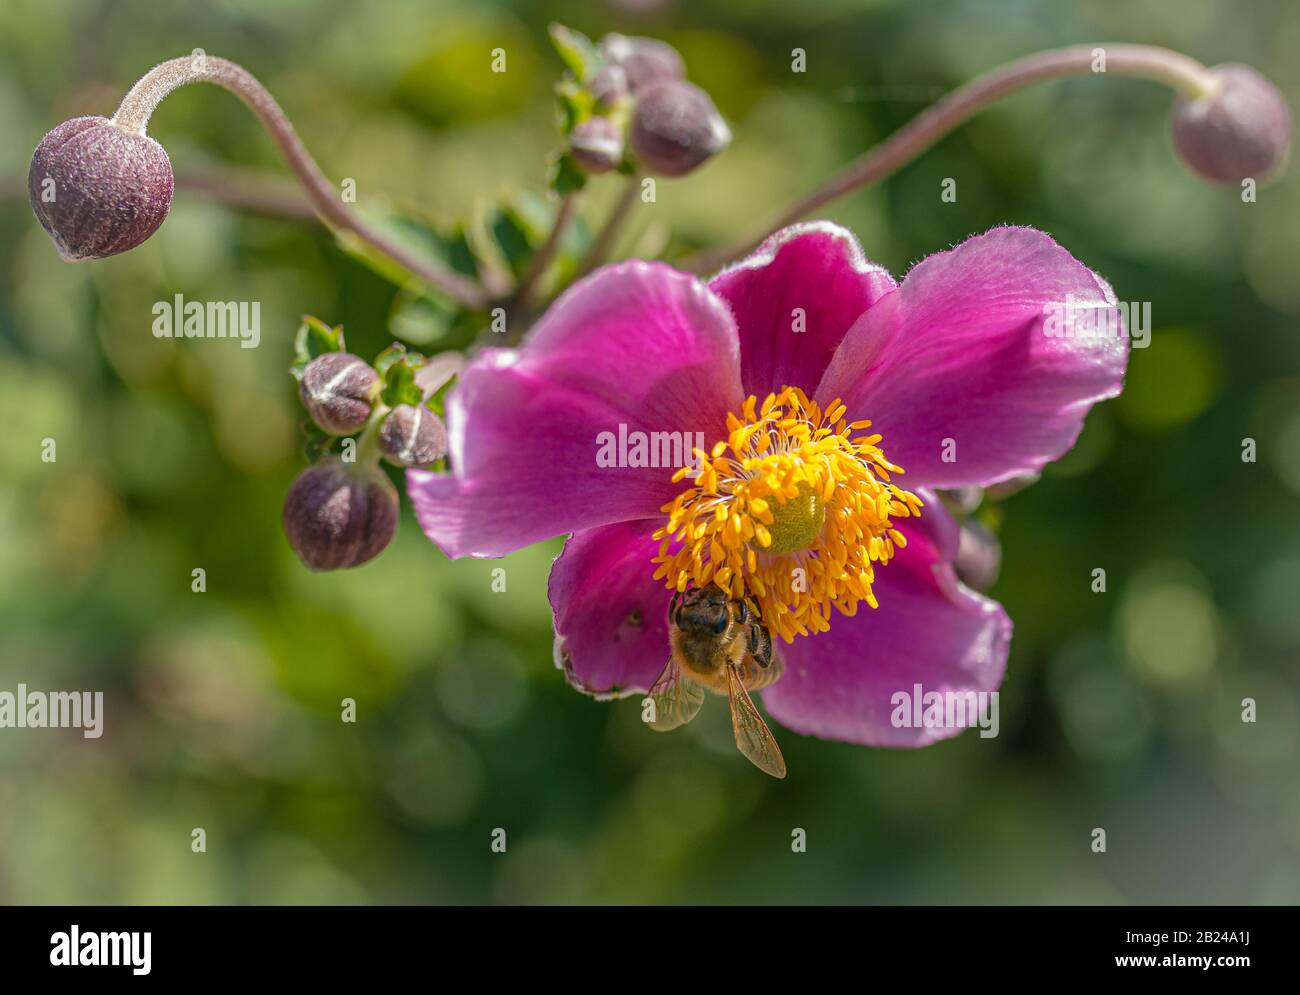 Fleur d'anémone pourpre Anemone hupehensis) plantes en fleur. Plante de jardin rose dans la famille des Ranunculaceae. Gros plan sur les fleurs d'anémones japonaises Banque D'Images